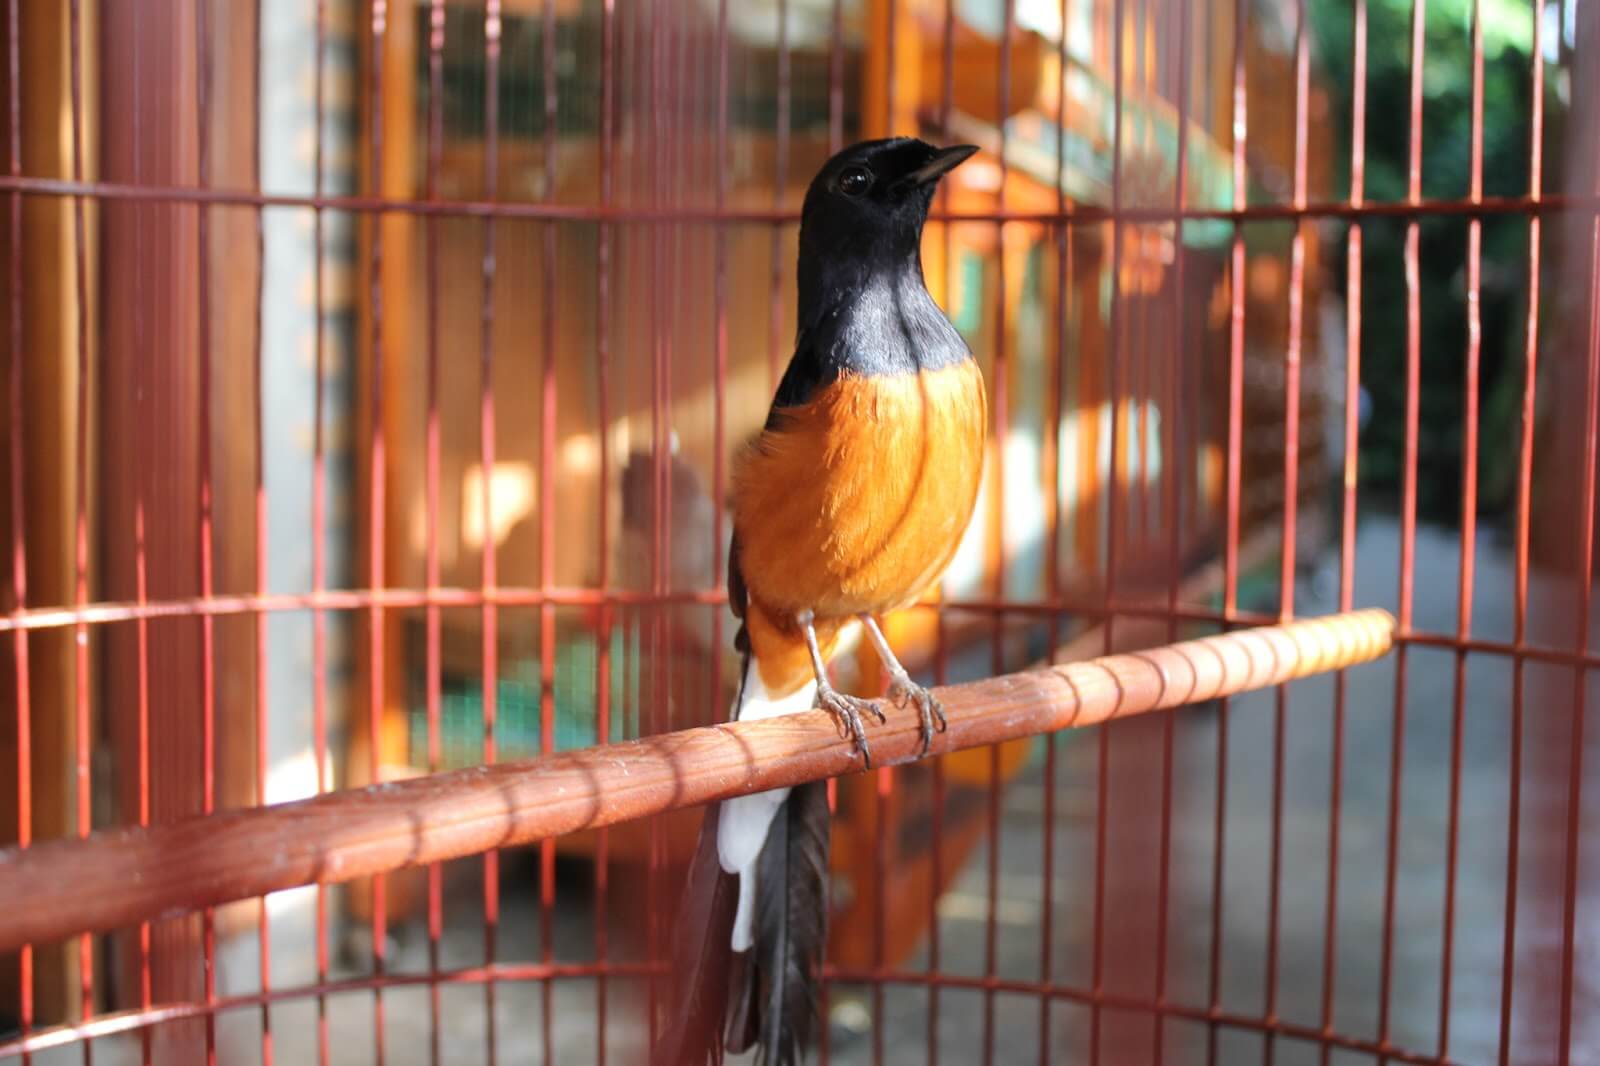 Efek Samping Obar Burung Metabolisme: Burung Murai Jadi Malas Untuk Berbunyi